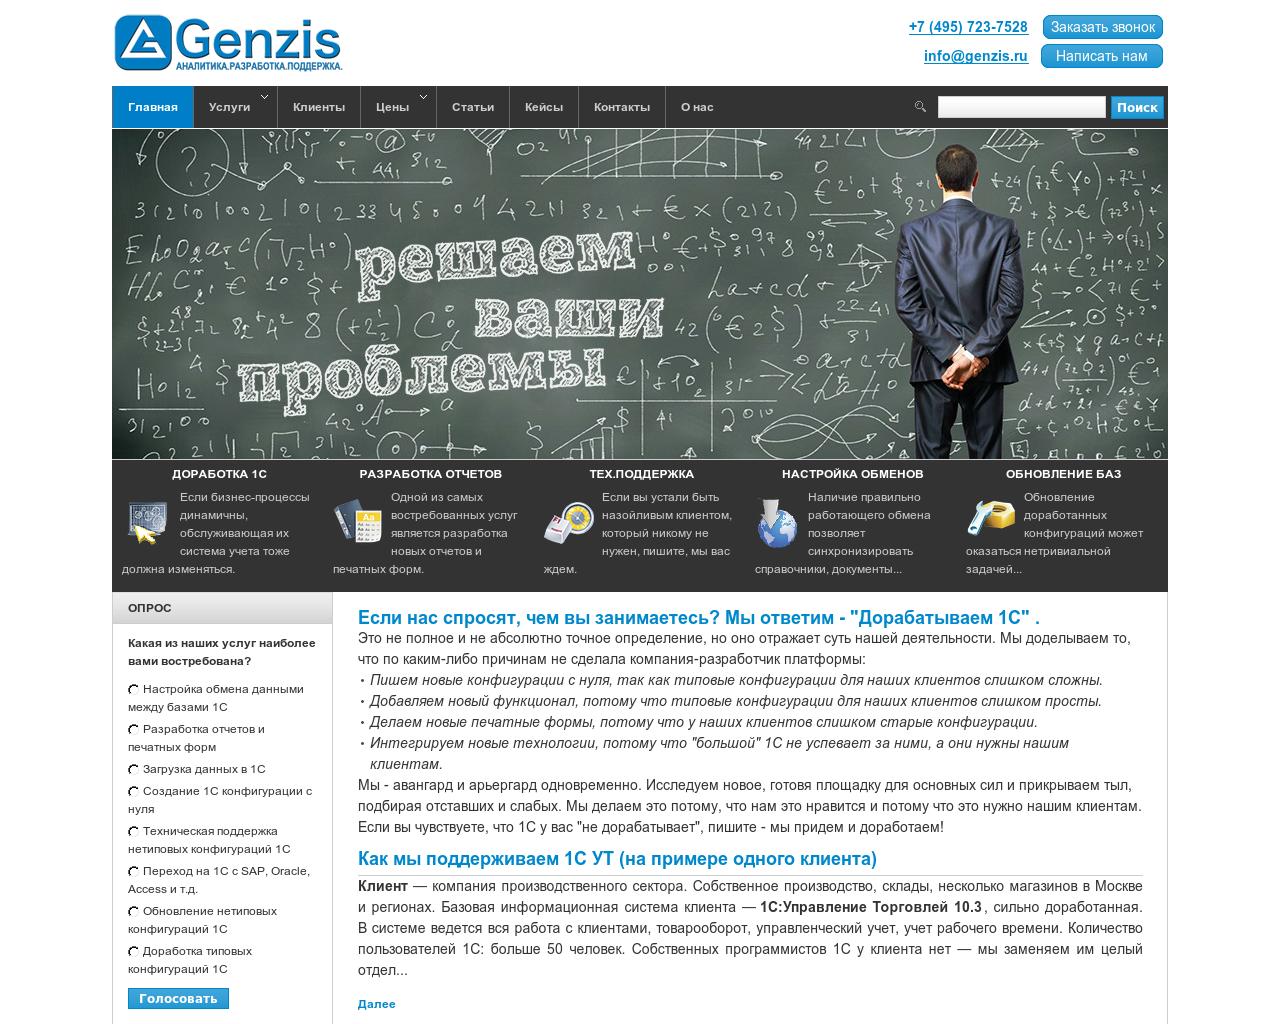 Изображение сайта genzis.ru в разрешении 1280x1024